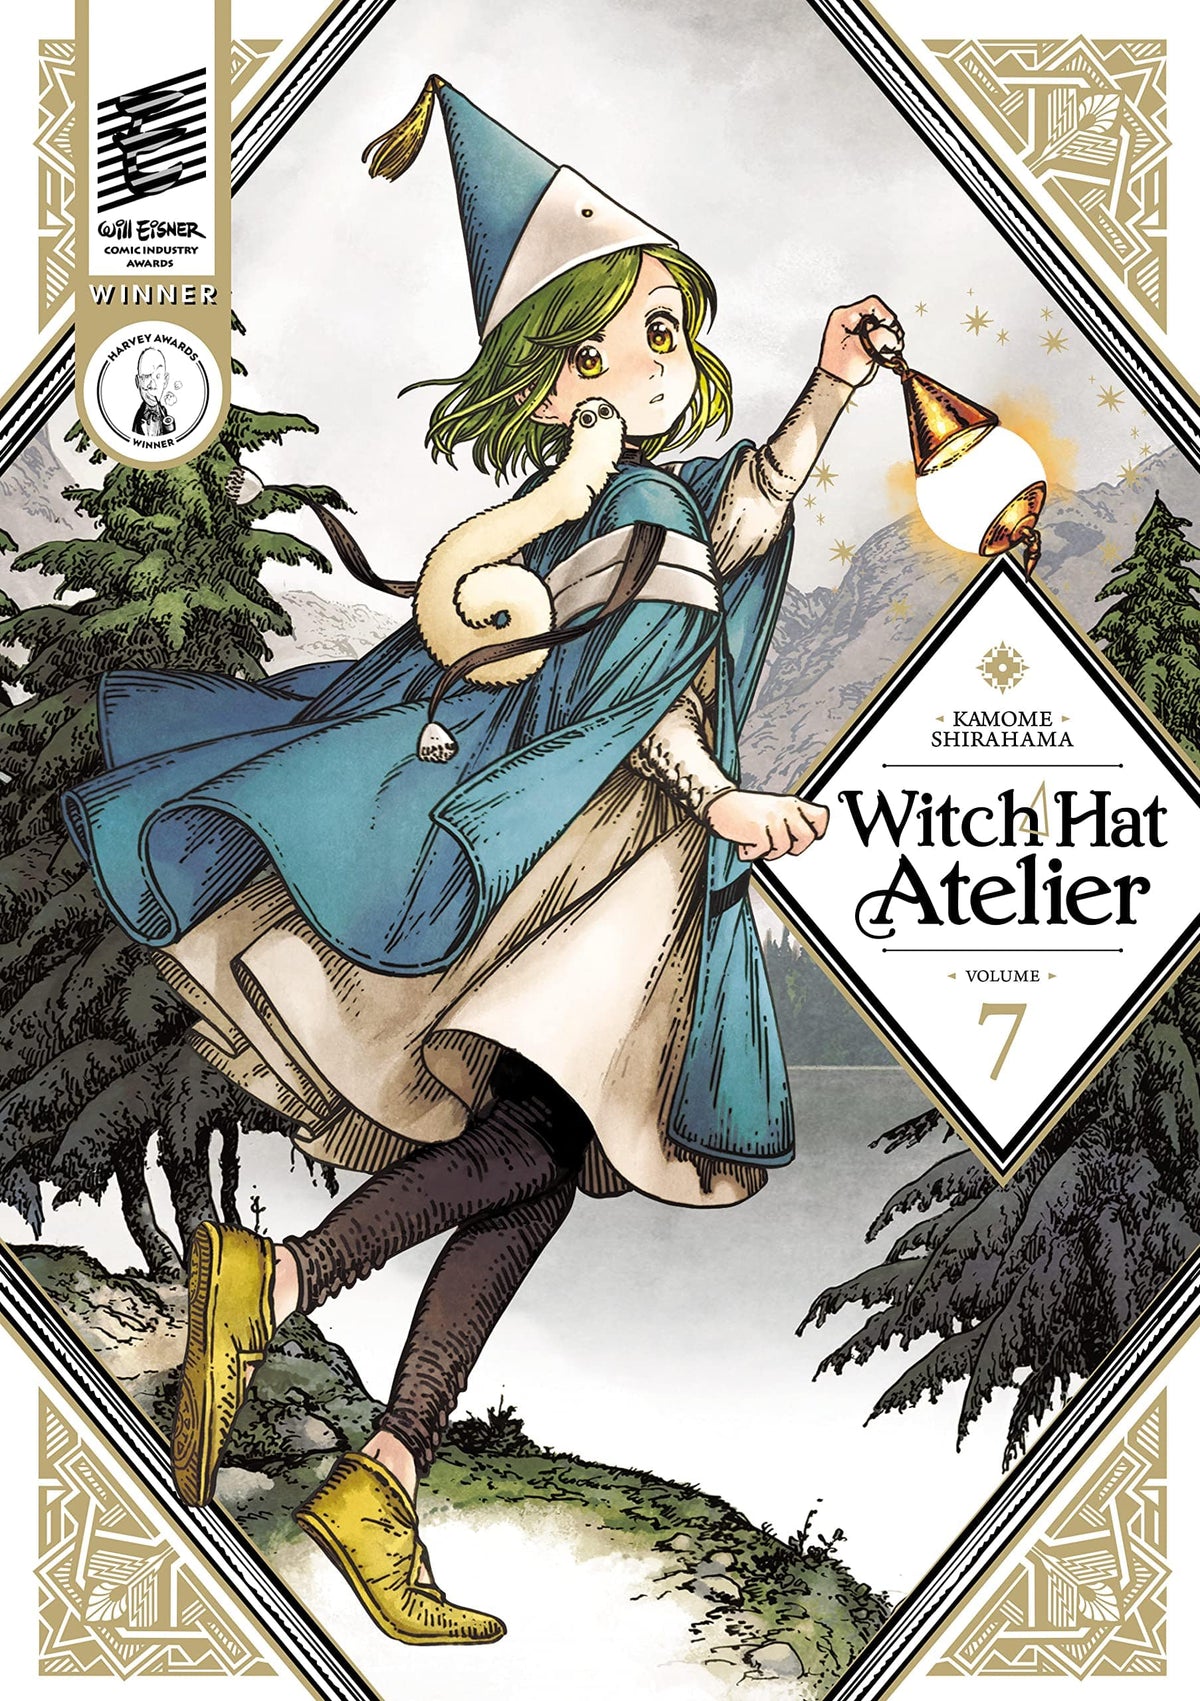 Witch Hat Atelier Vol. 7 - Third Eye